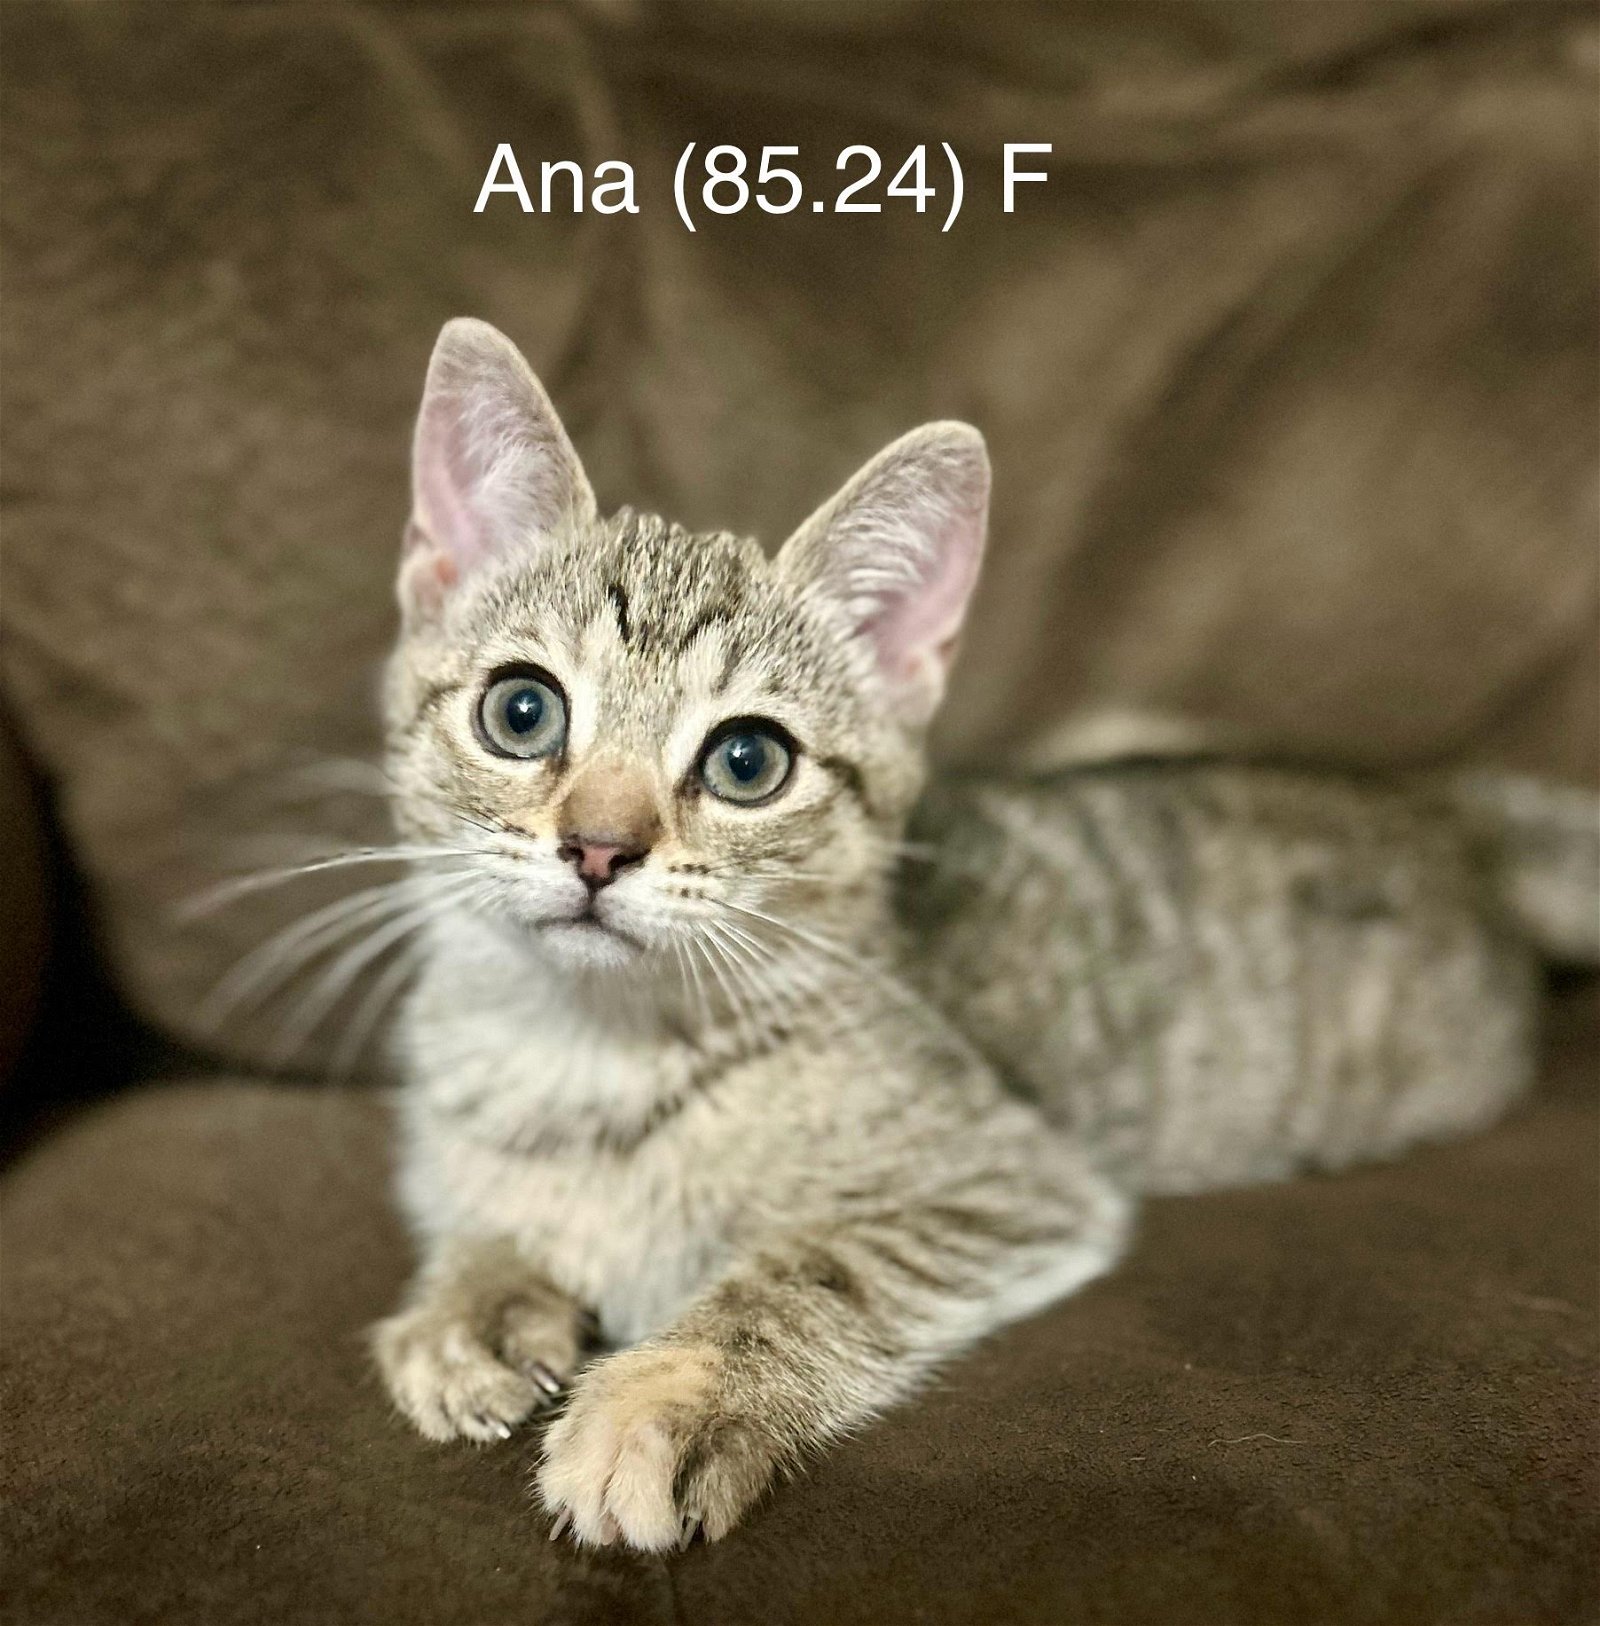 adoptable Cat in Batavia, NY named Foster Ana